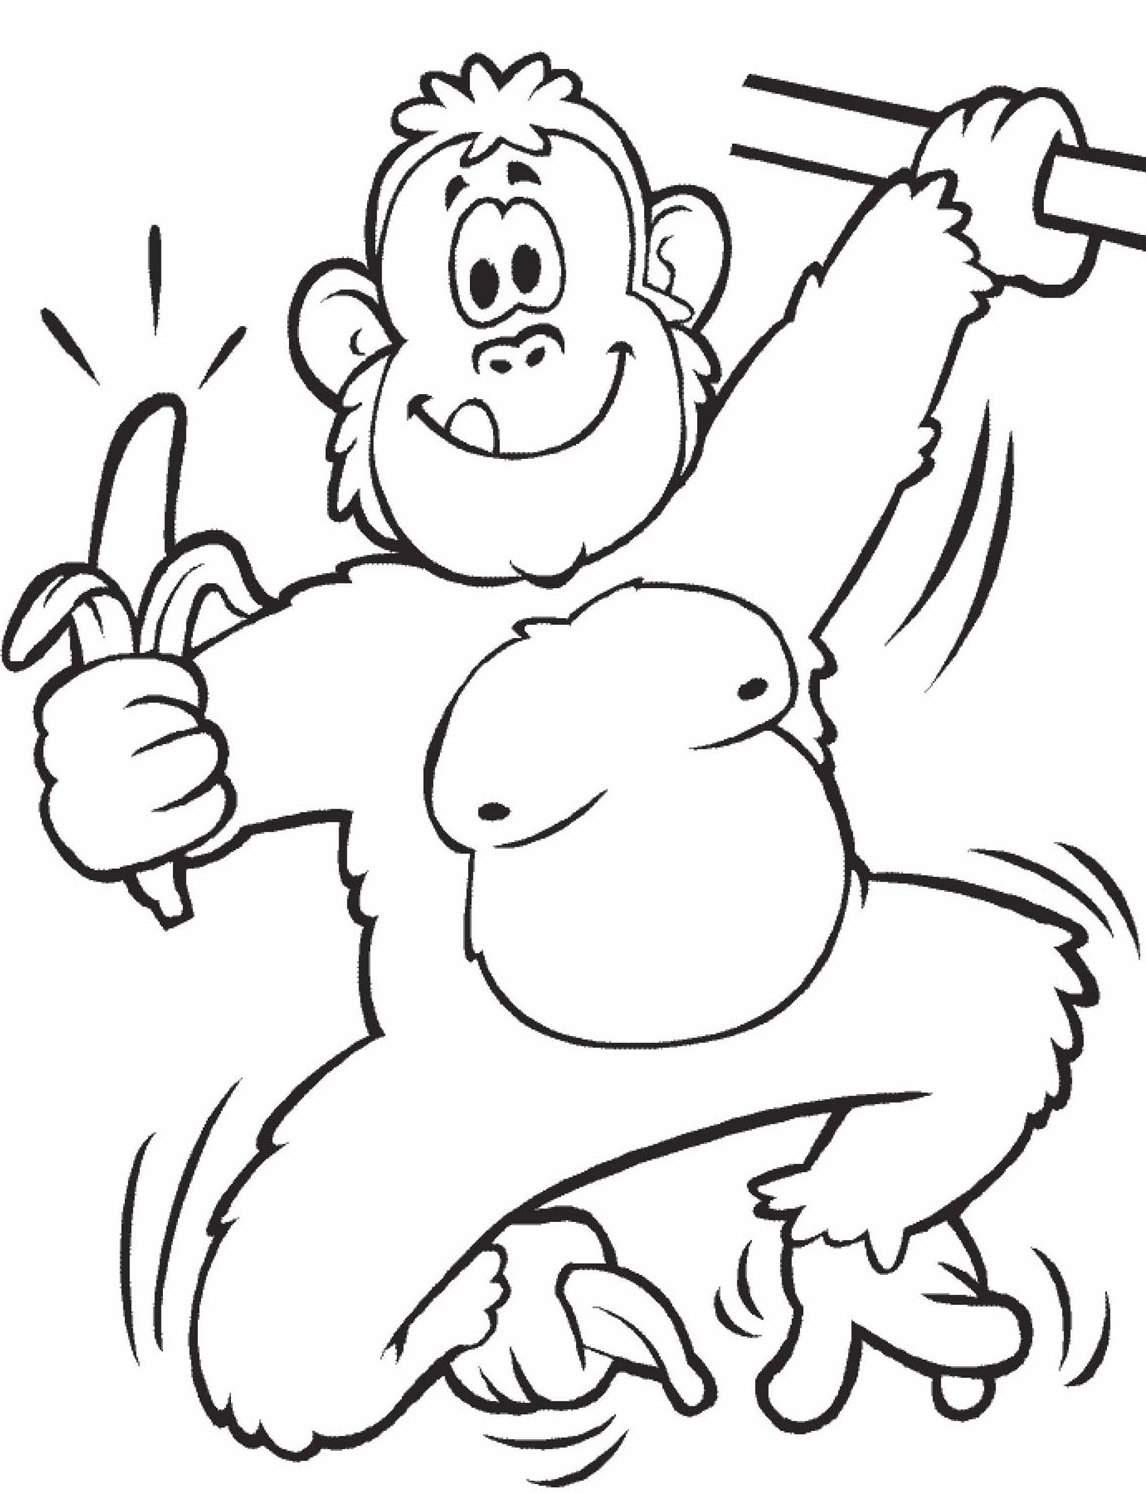 Belajar mewarnai gambar binatang monyet yang lucu untuk ...